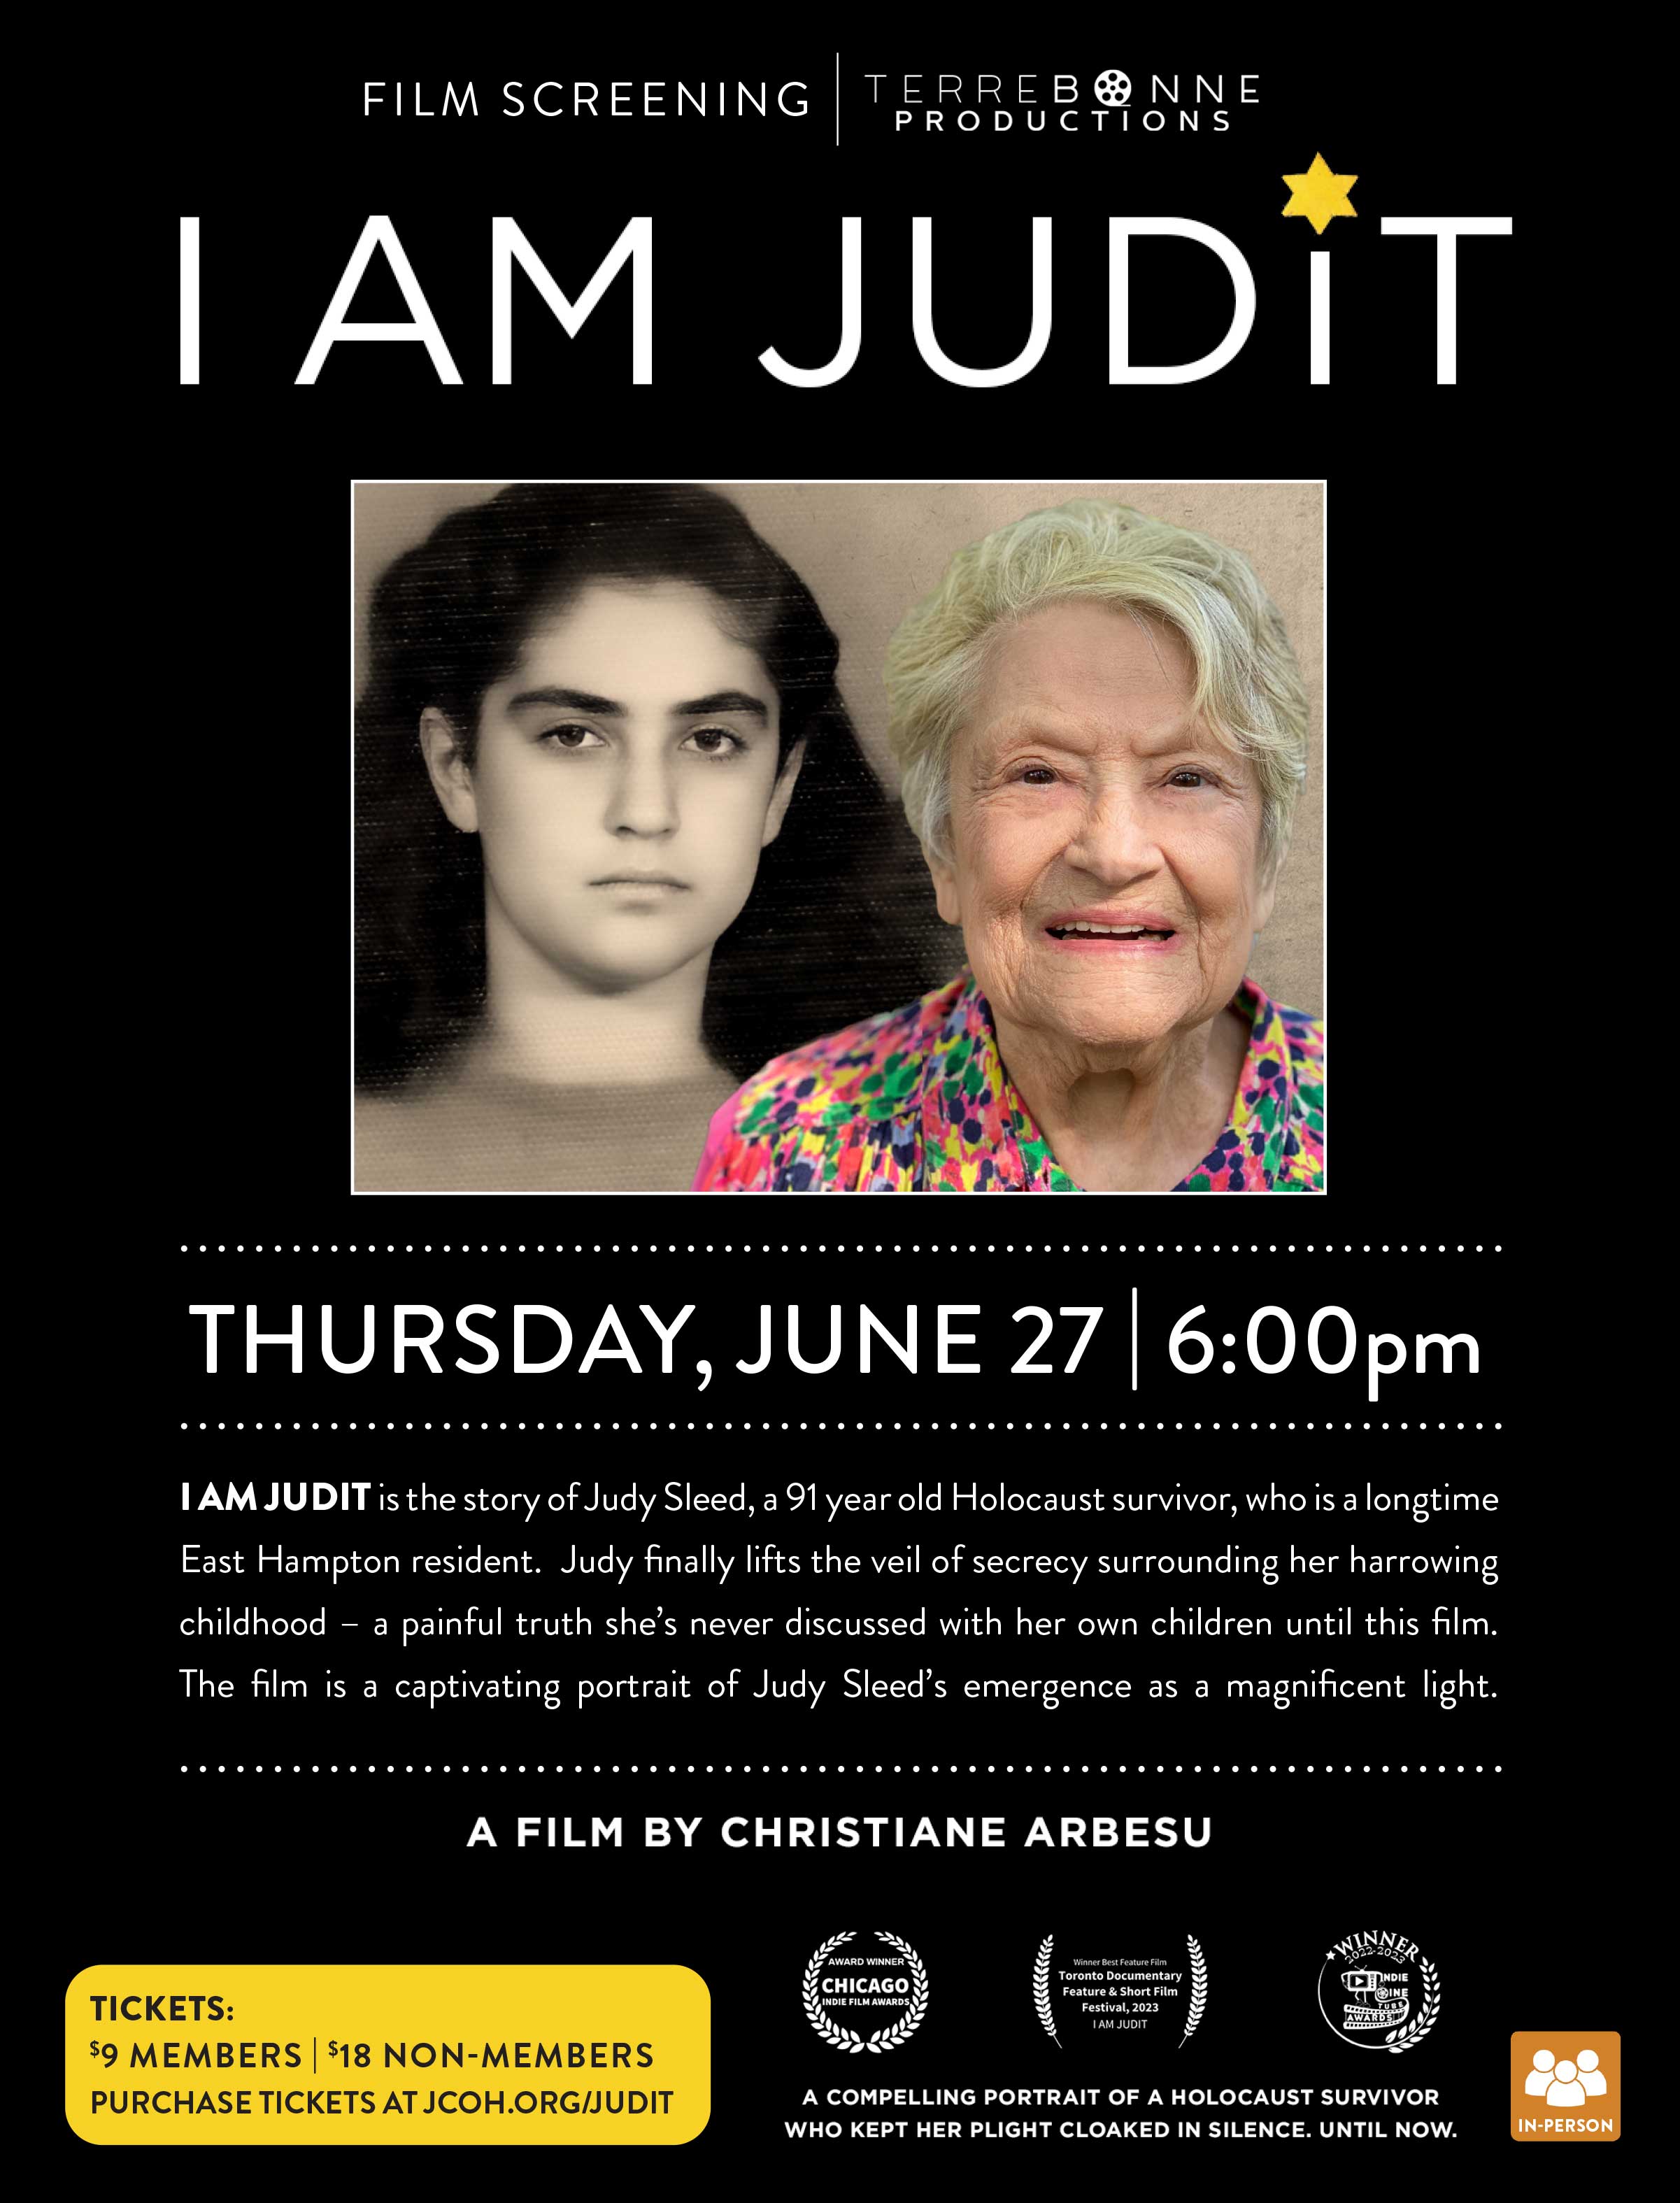 "I AM JUDIT" Film Screening